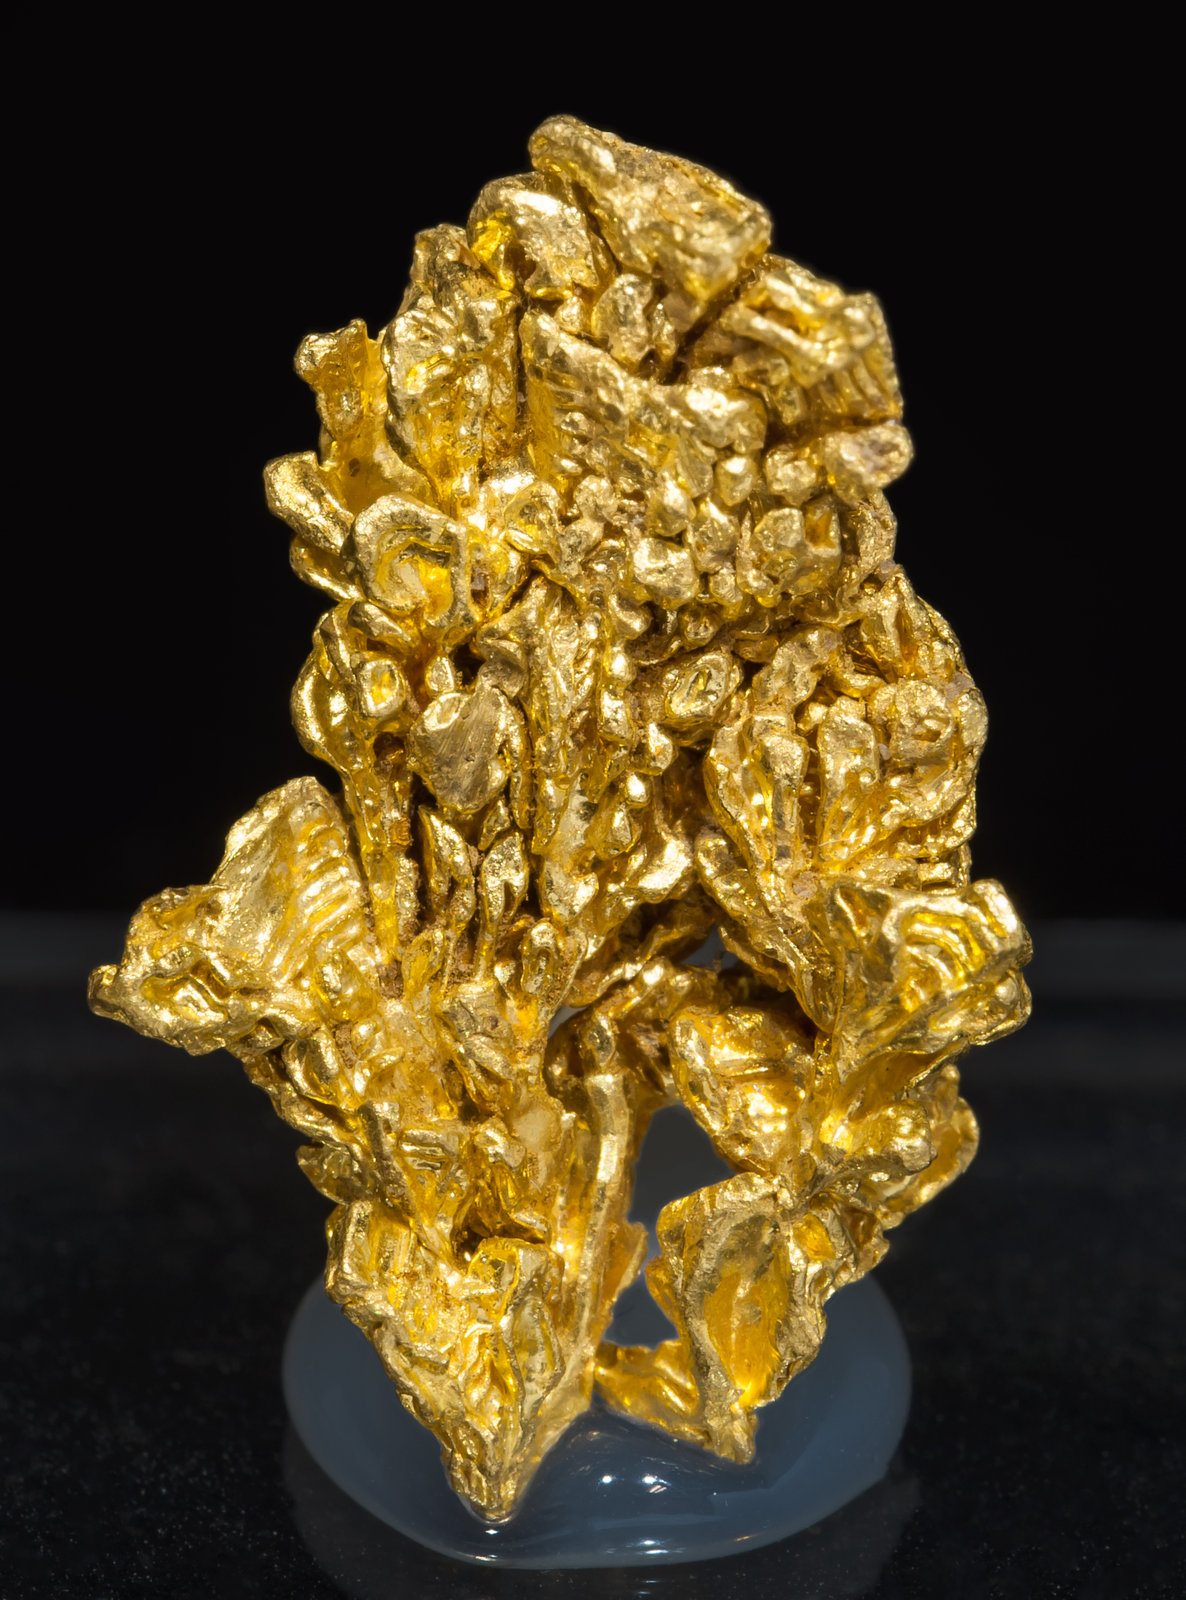 specimens/s_imagesAL4/Gold-TT46AL4f.jpg